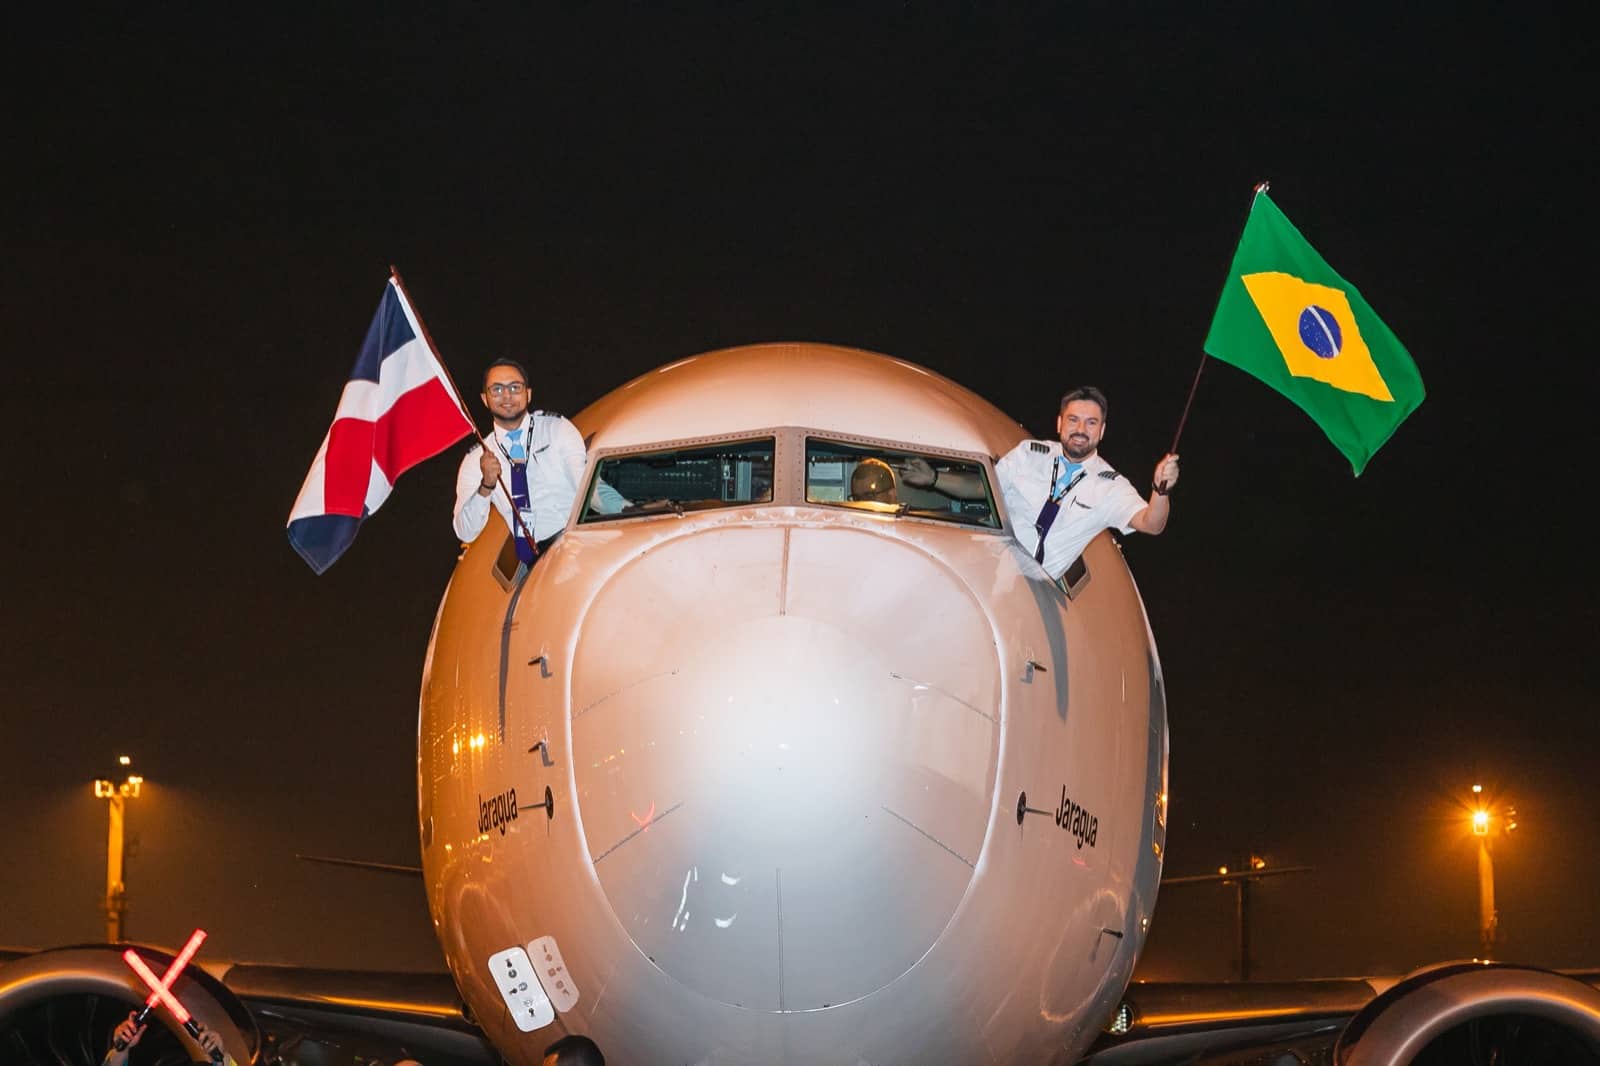 Arajet aterrizó por primera vez en Sao Paulo y ya conecta también con Santiago